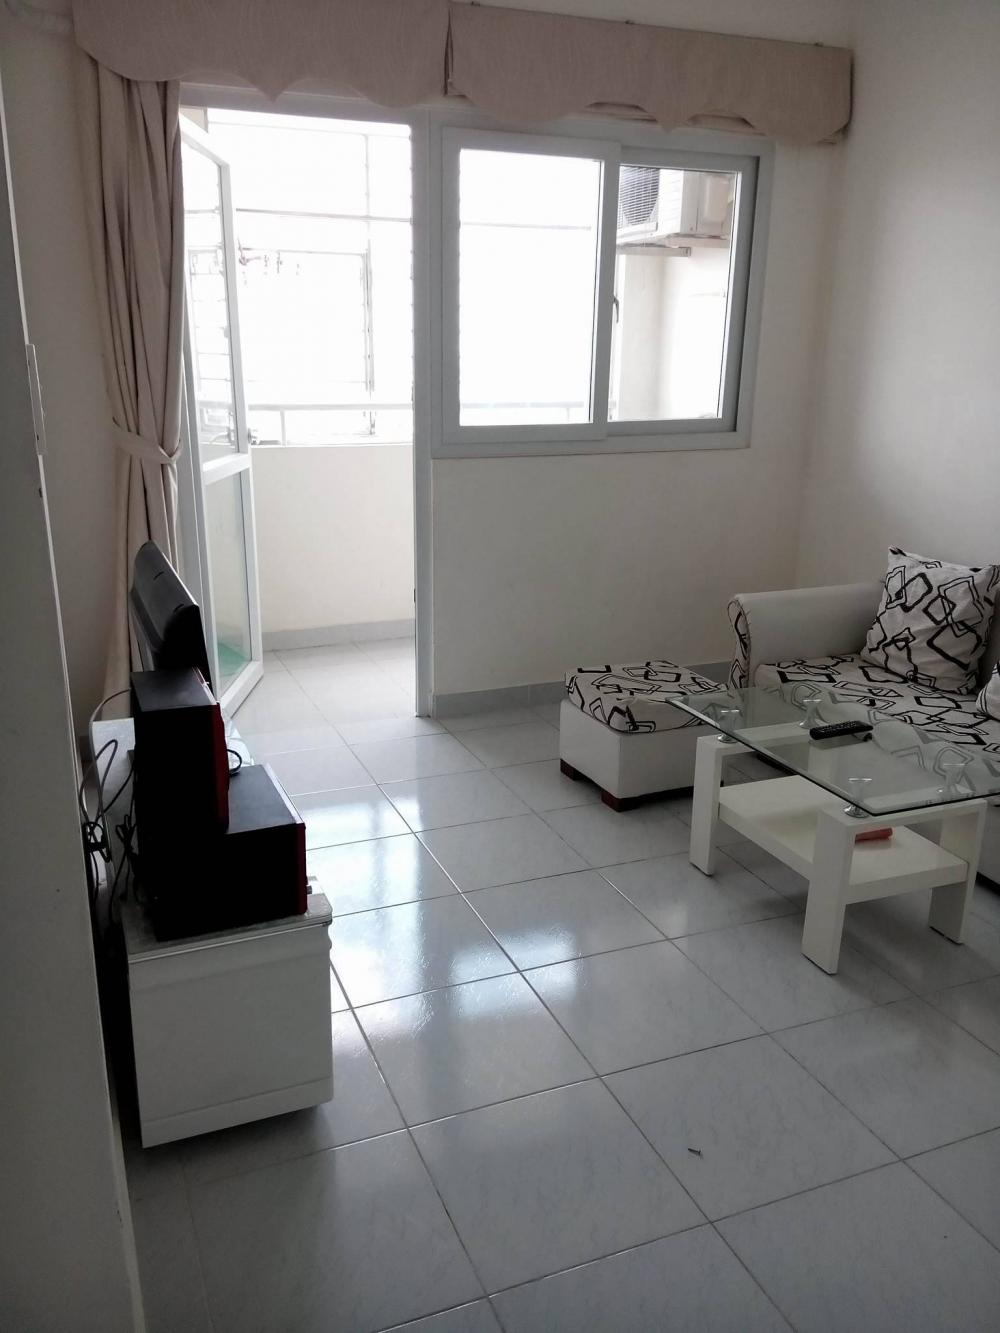 Cho thuê căn hộ chung cư Tân Phước Plaza Q11.108m,3pn,nội thất cơ bản,giá 17tr/th Lh 0932204185